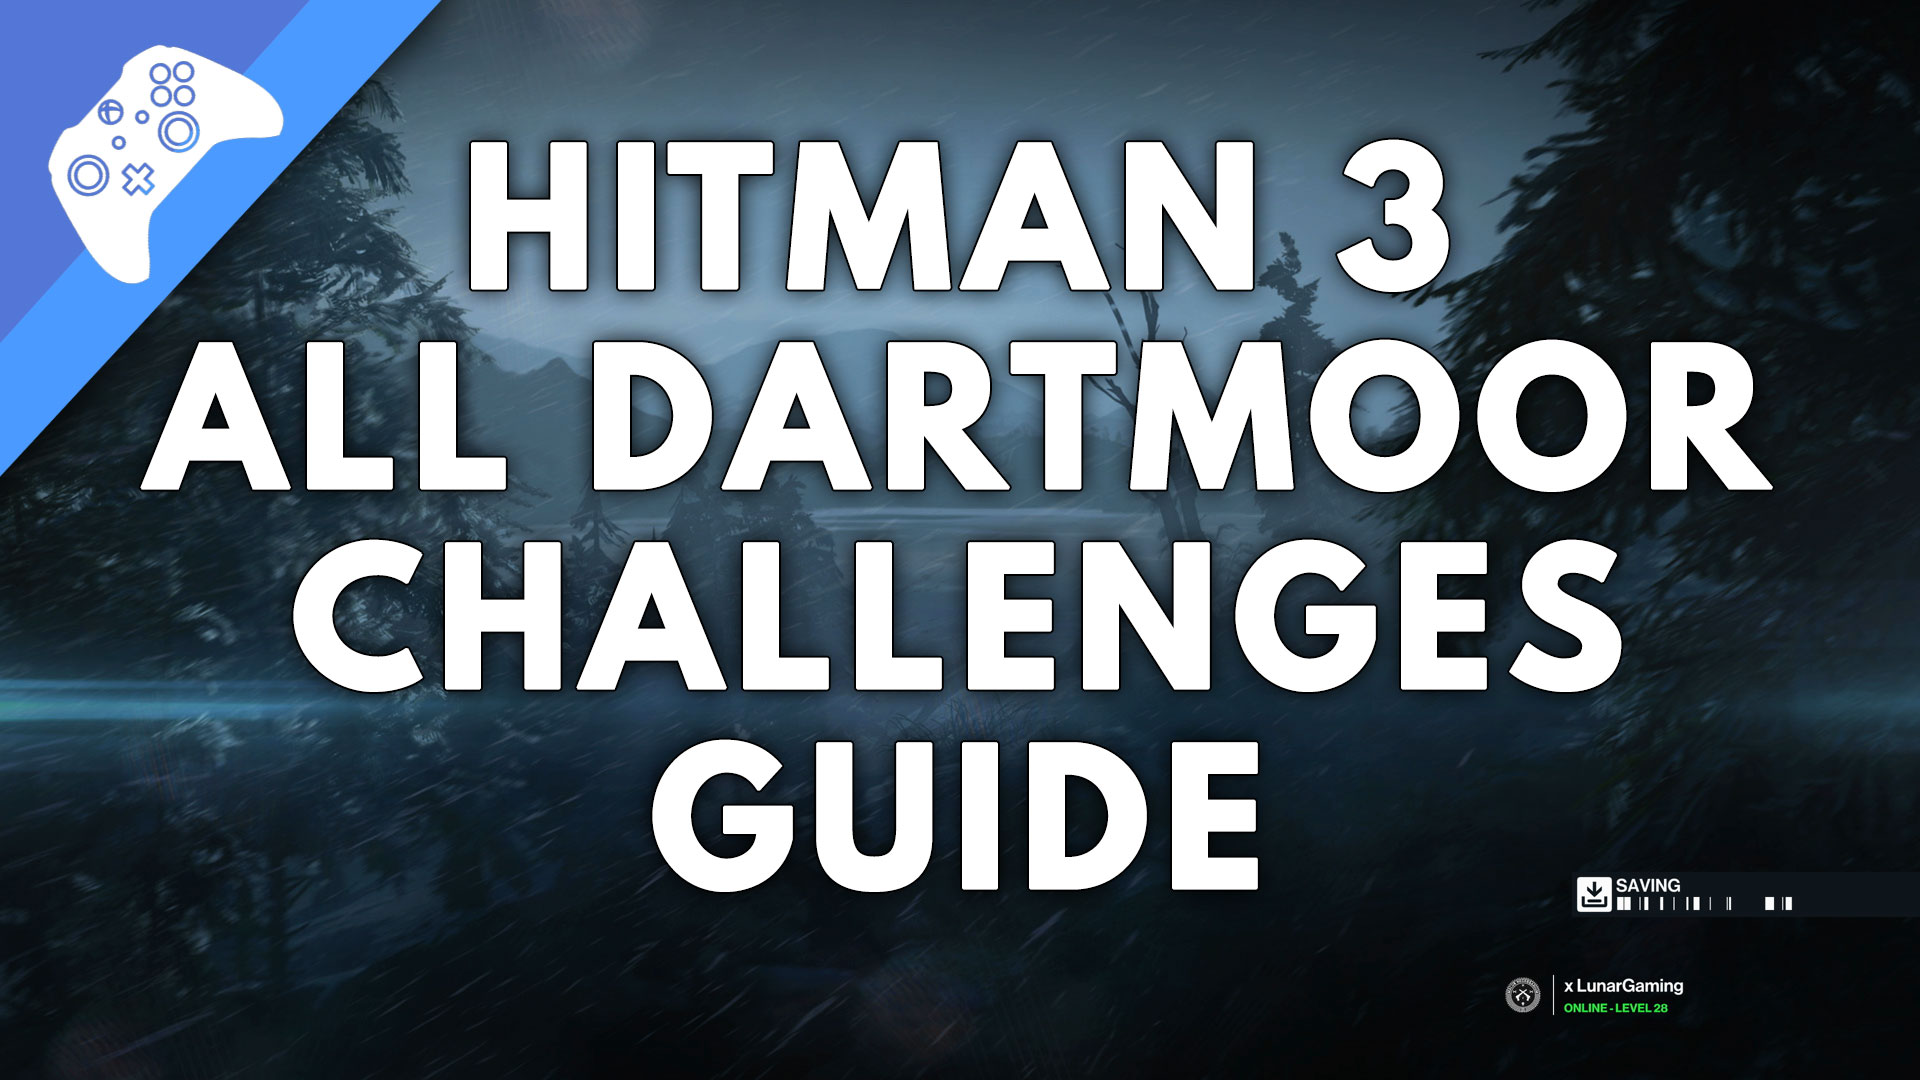 Dartmoor Challenges